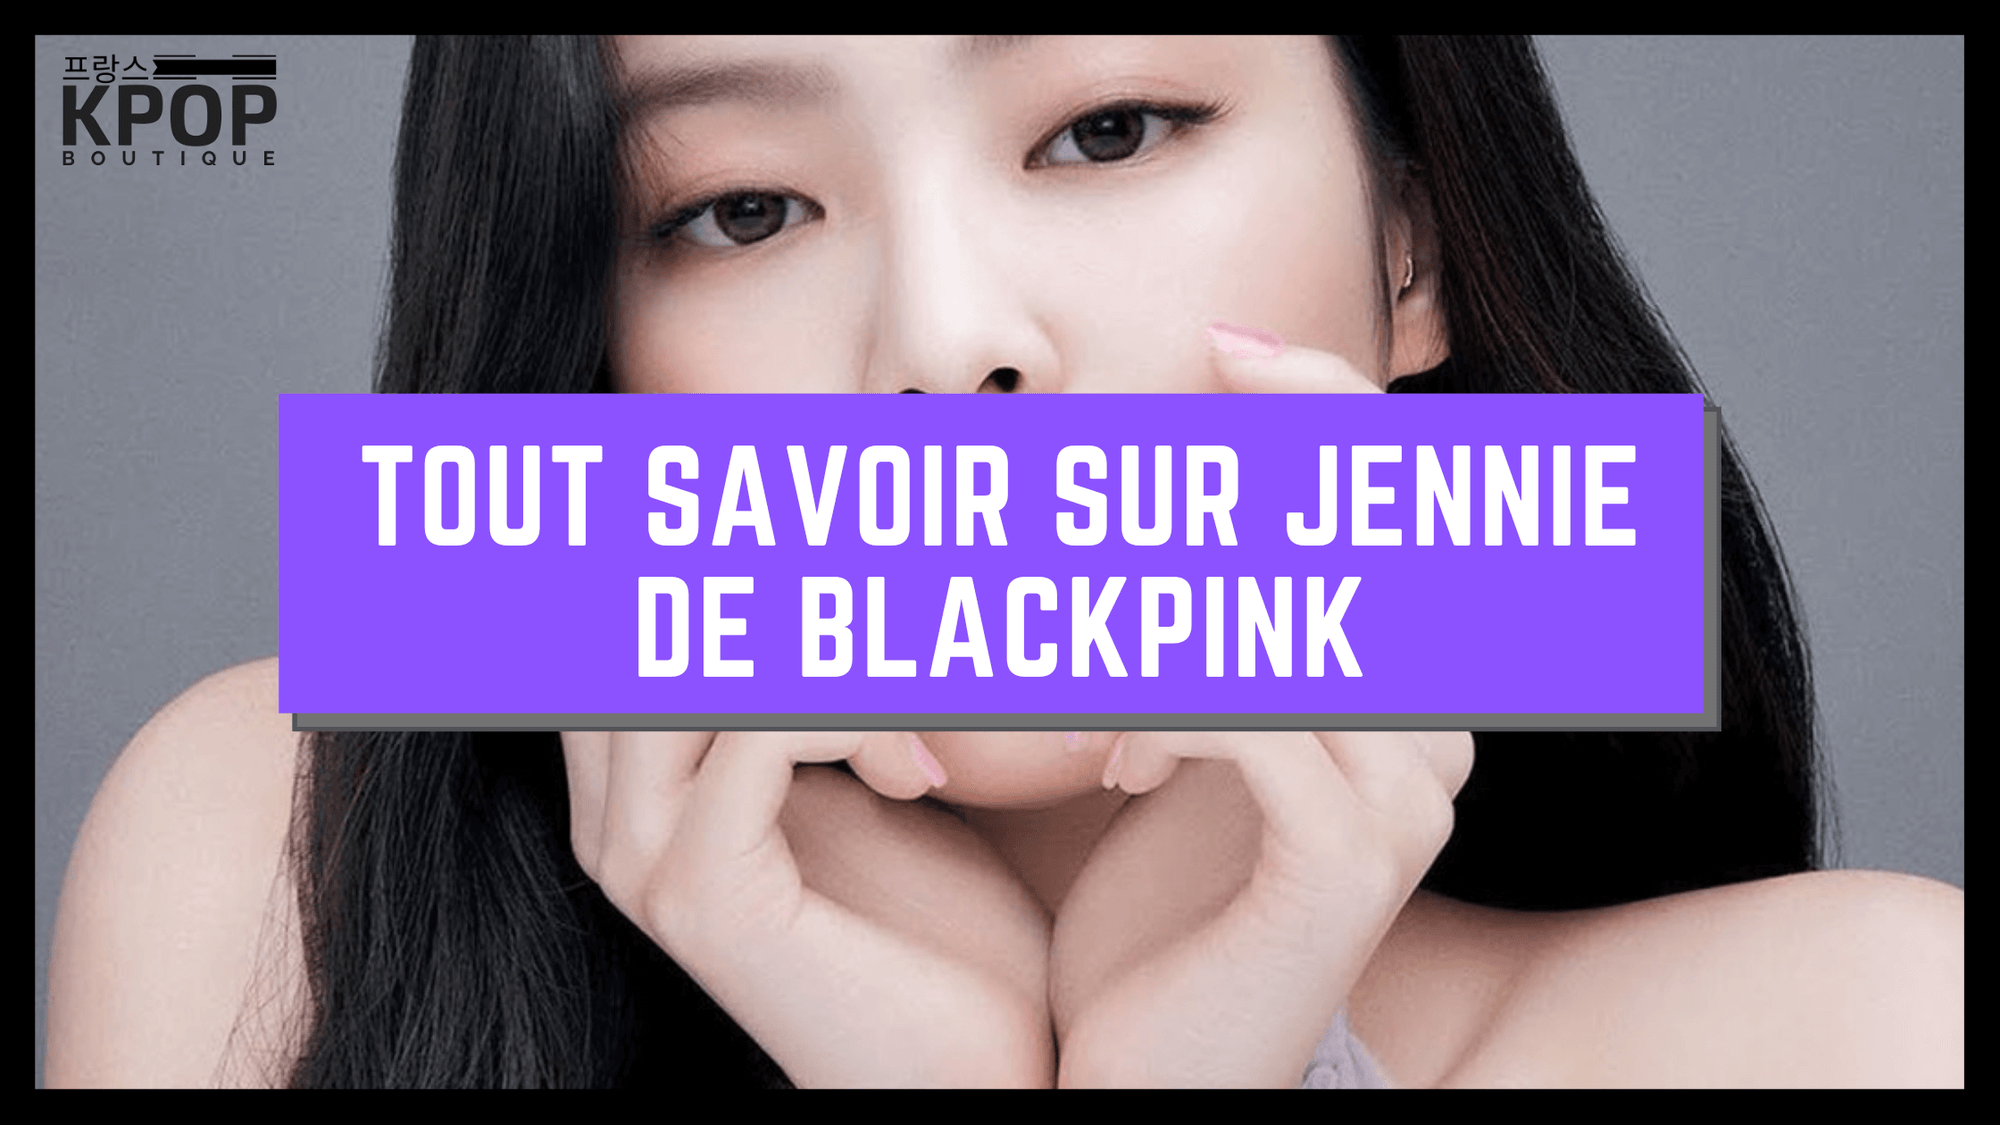 Jennie Blackpink K-POP